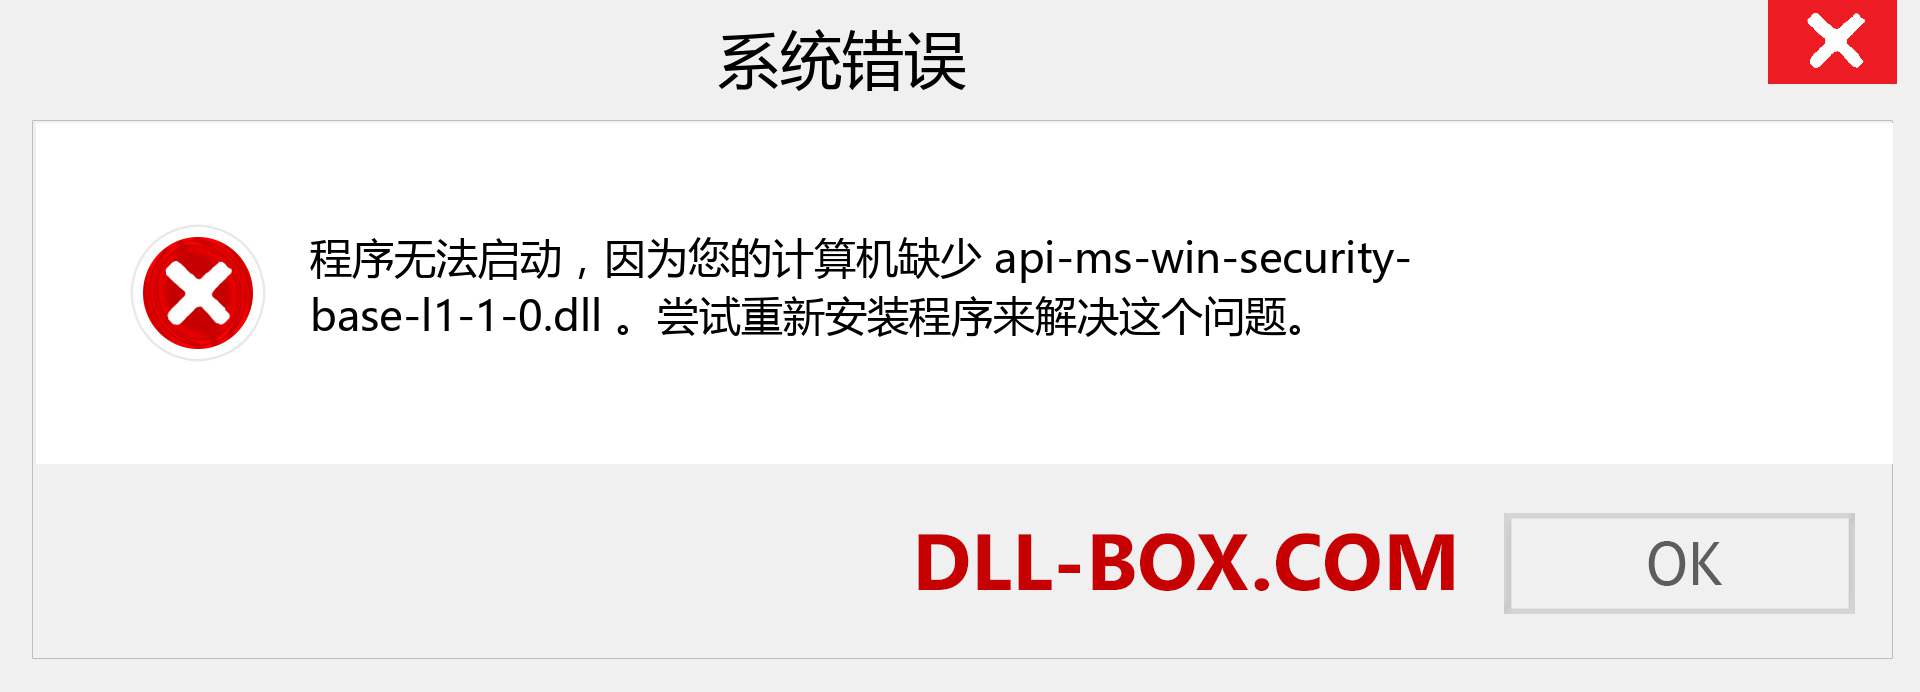 api-ms-win-security-base-l1-1-0.dll 文件丢失？。 适用于 Windows 7、8、10 的下载 - 修复 Windows、照片、图像上的 api-ms-win-security-base-l1-1-0 dll 丢失错误